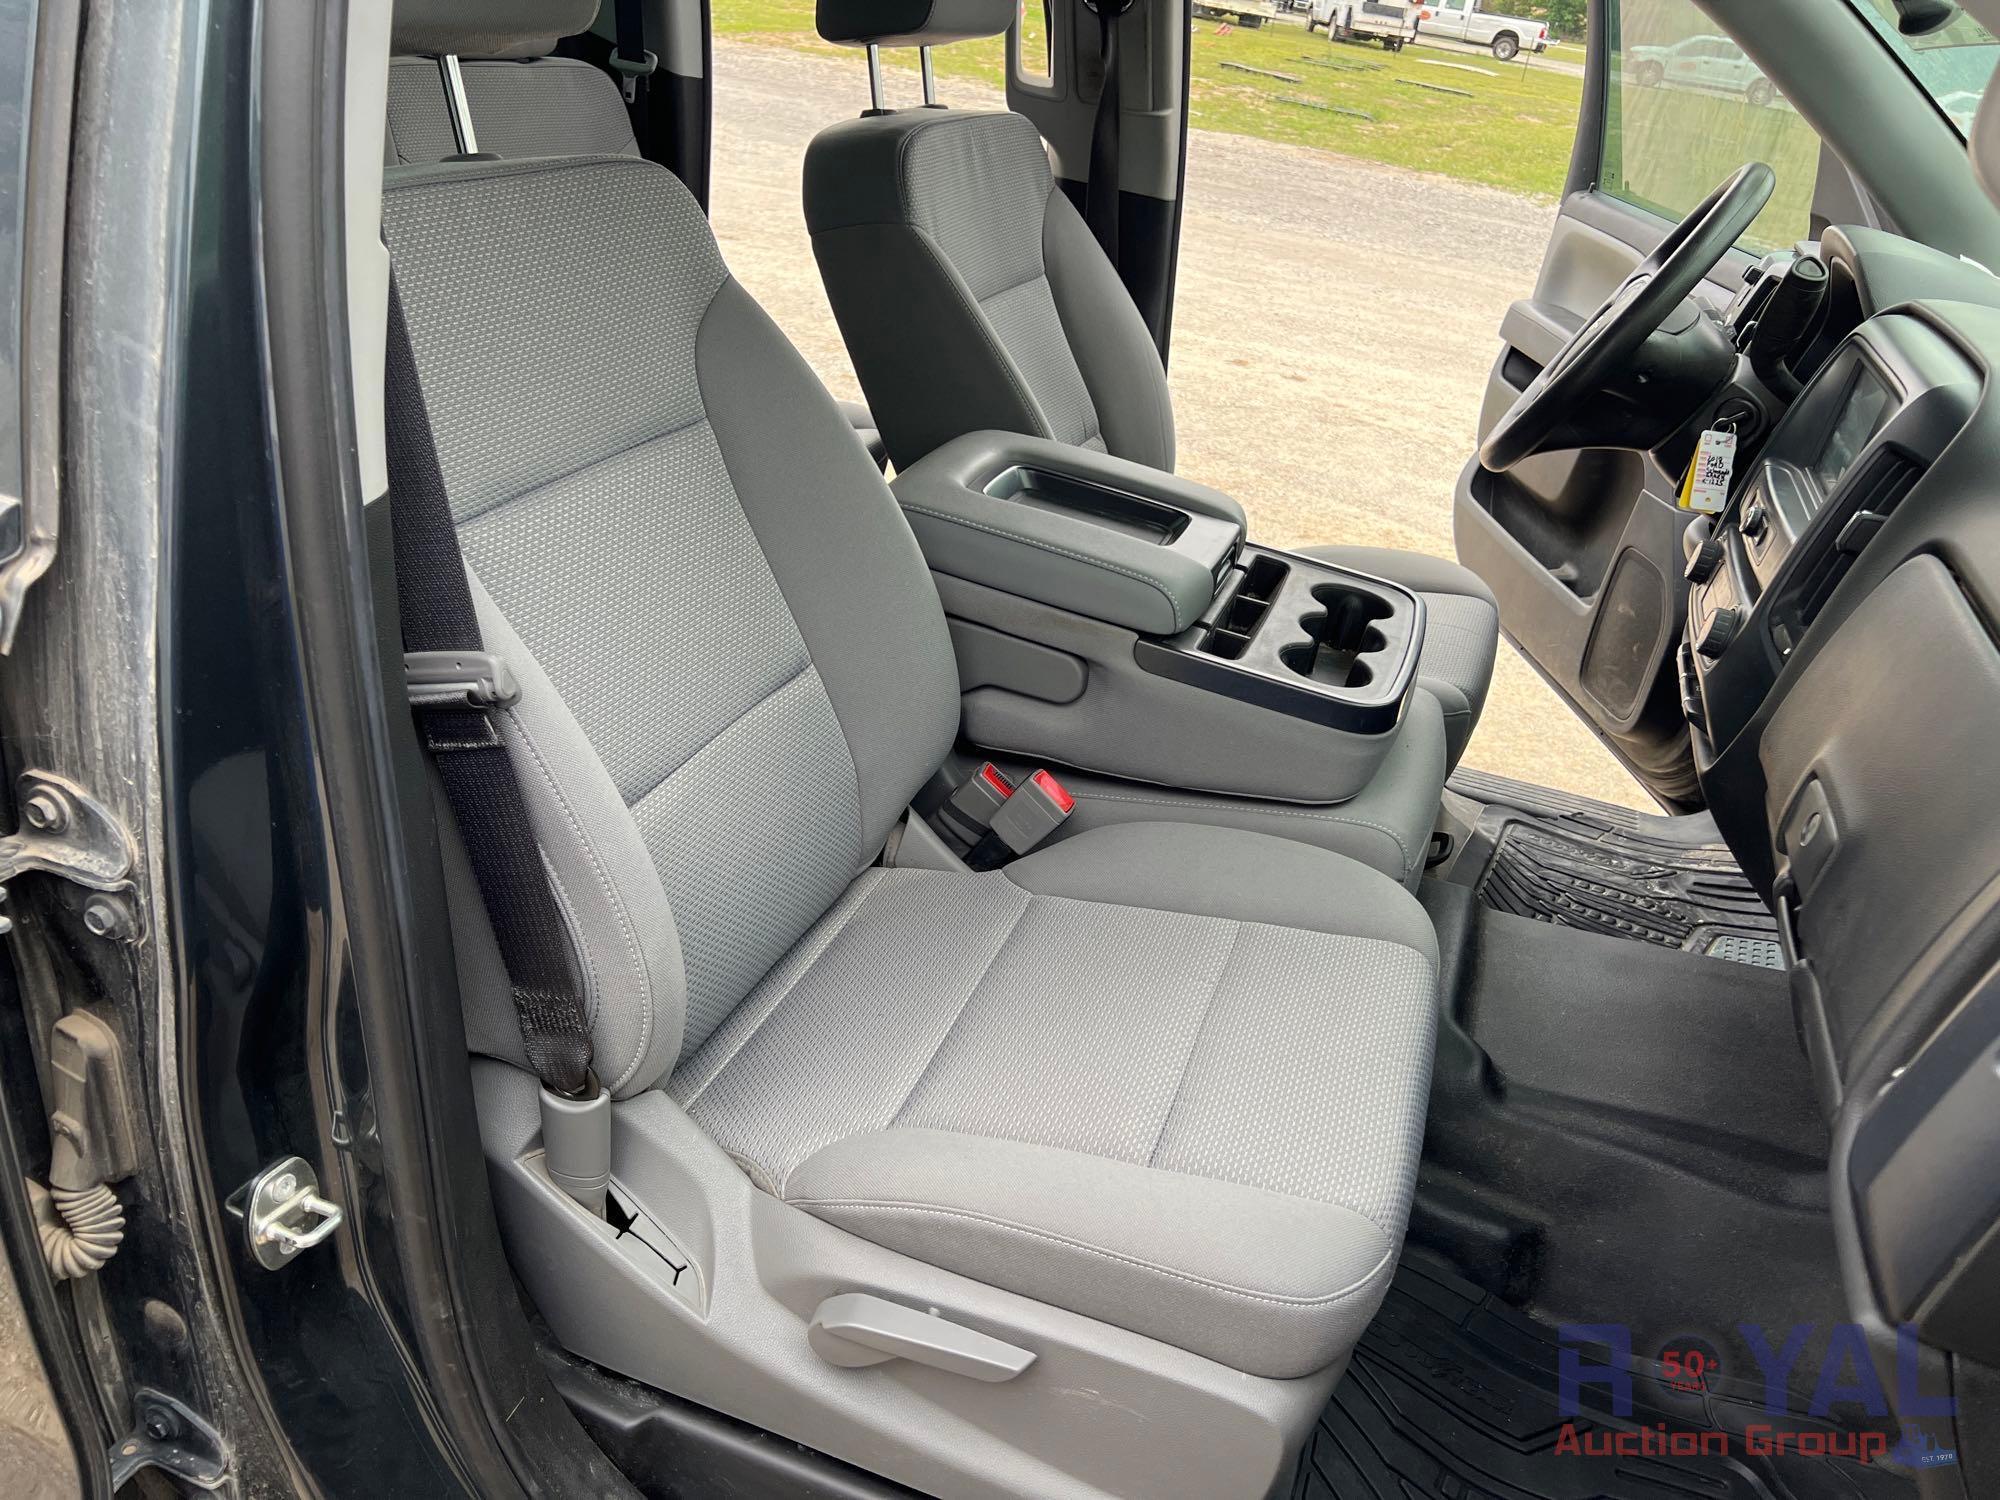 2018 Chevrolet Silverado 4x4 Double Cab Pickup Truck